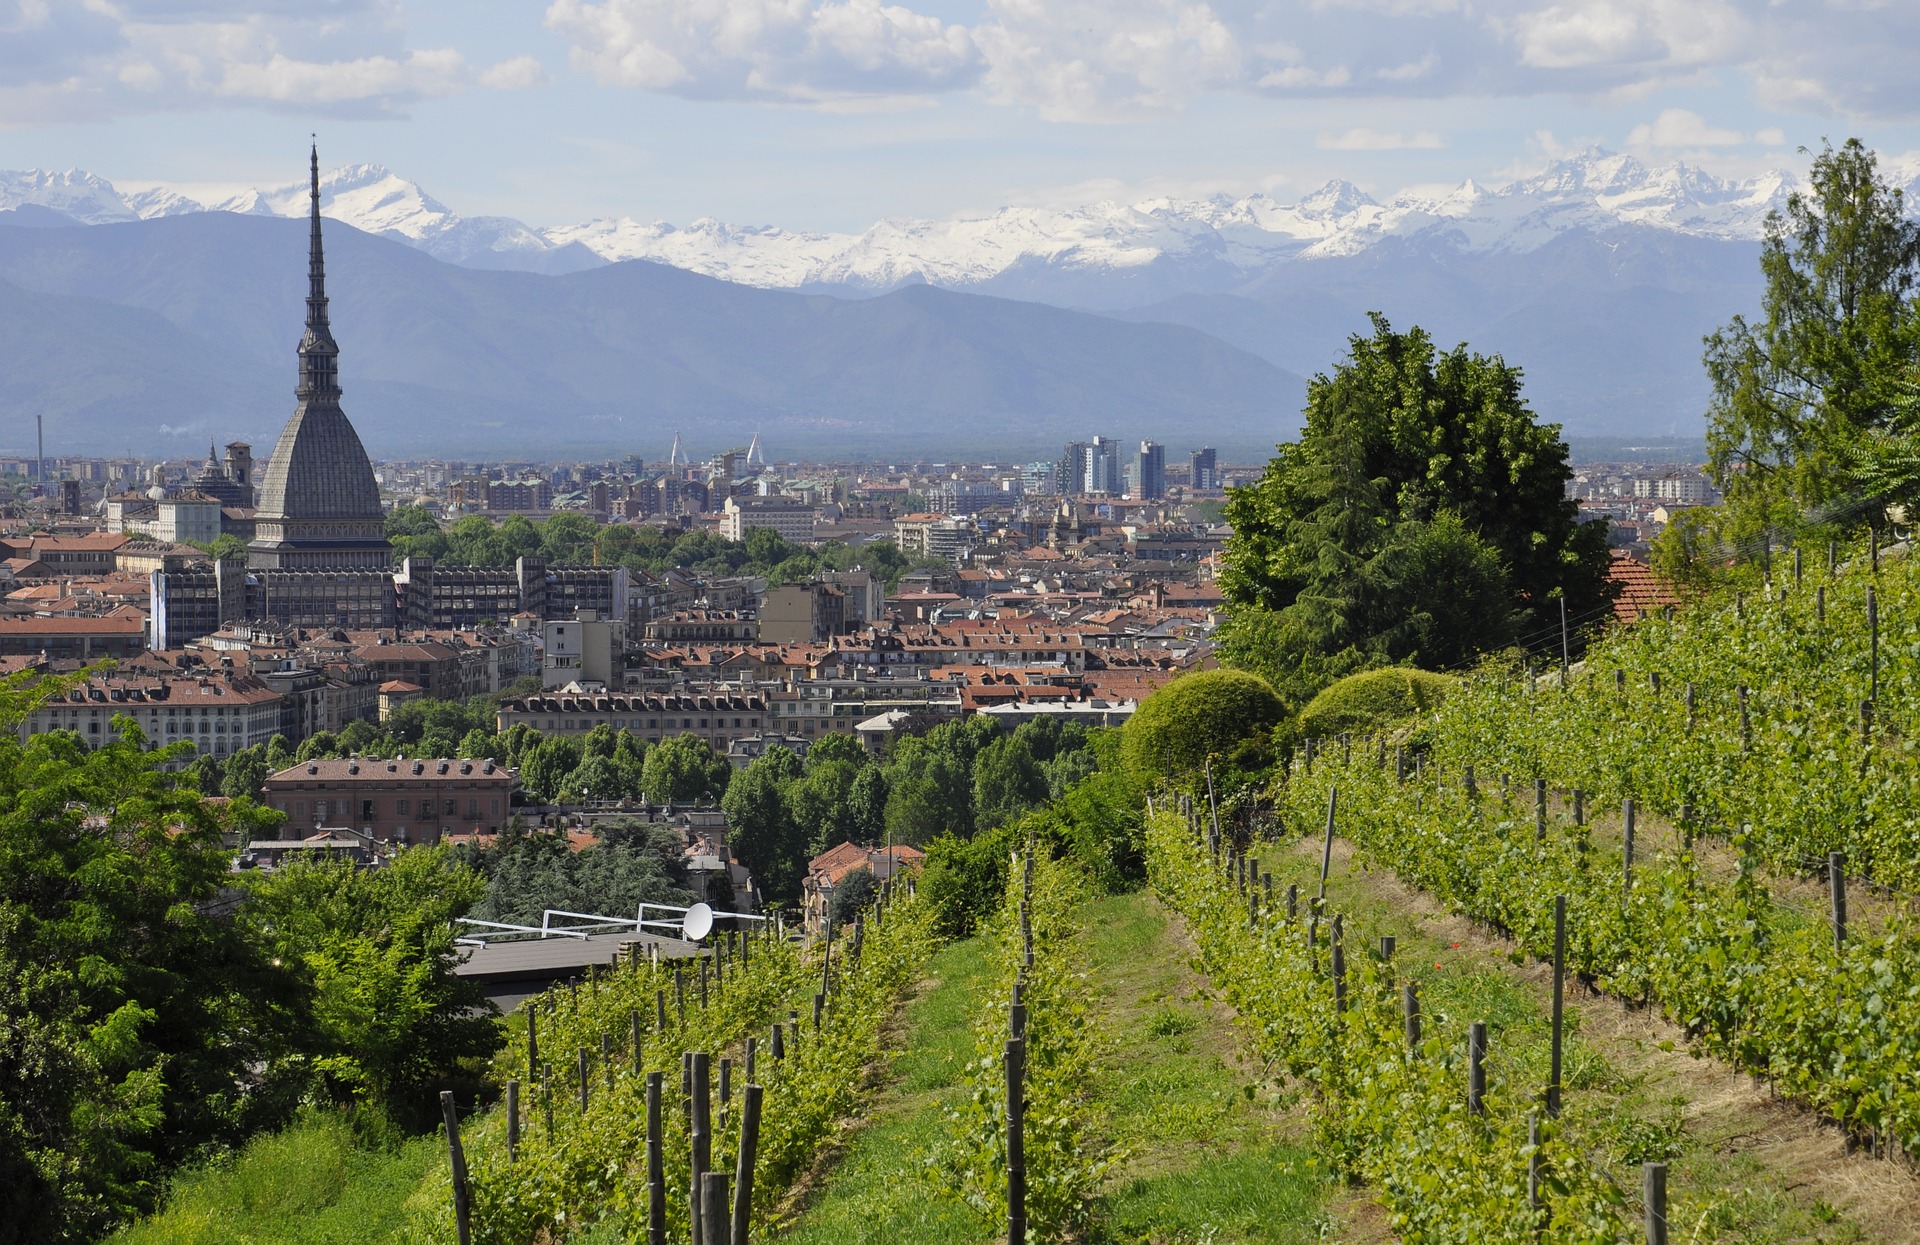 Vacanza invernale 2021-2022 in Piemonte. Buone le prospettive per la stagione turistica